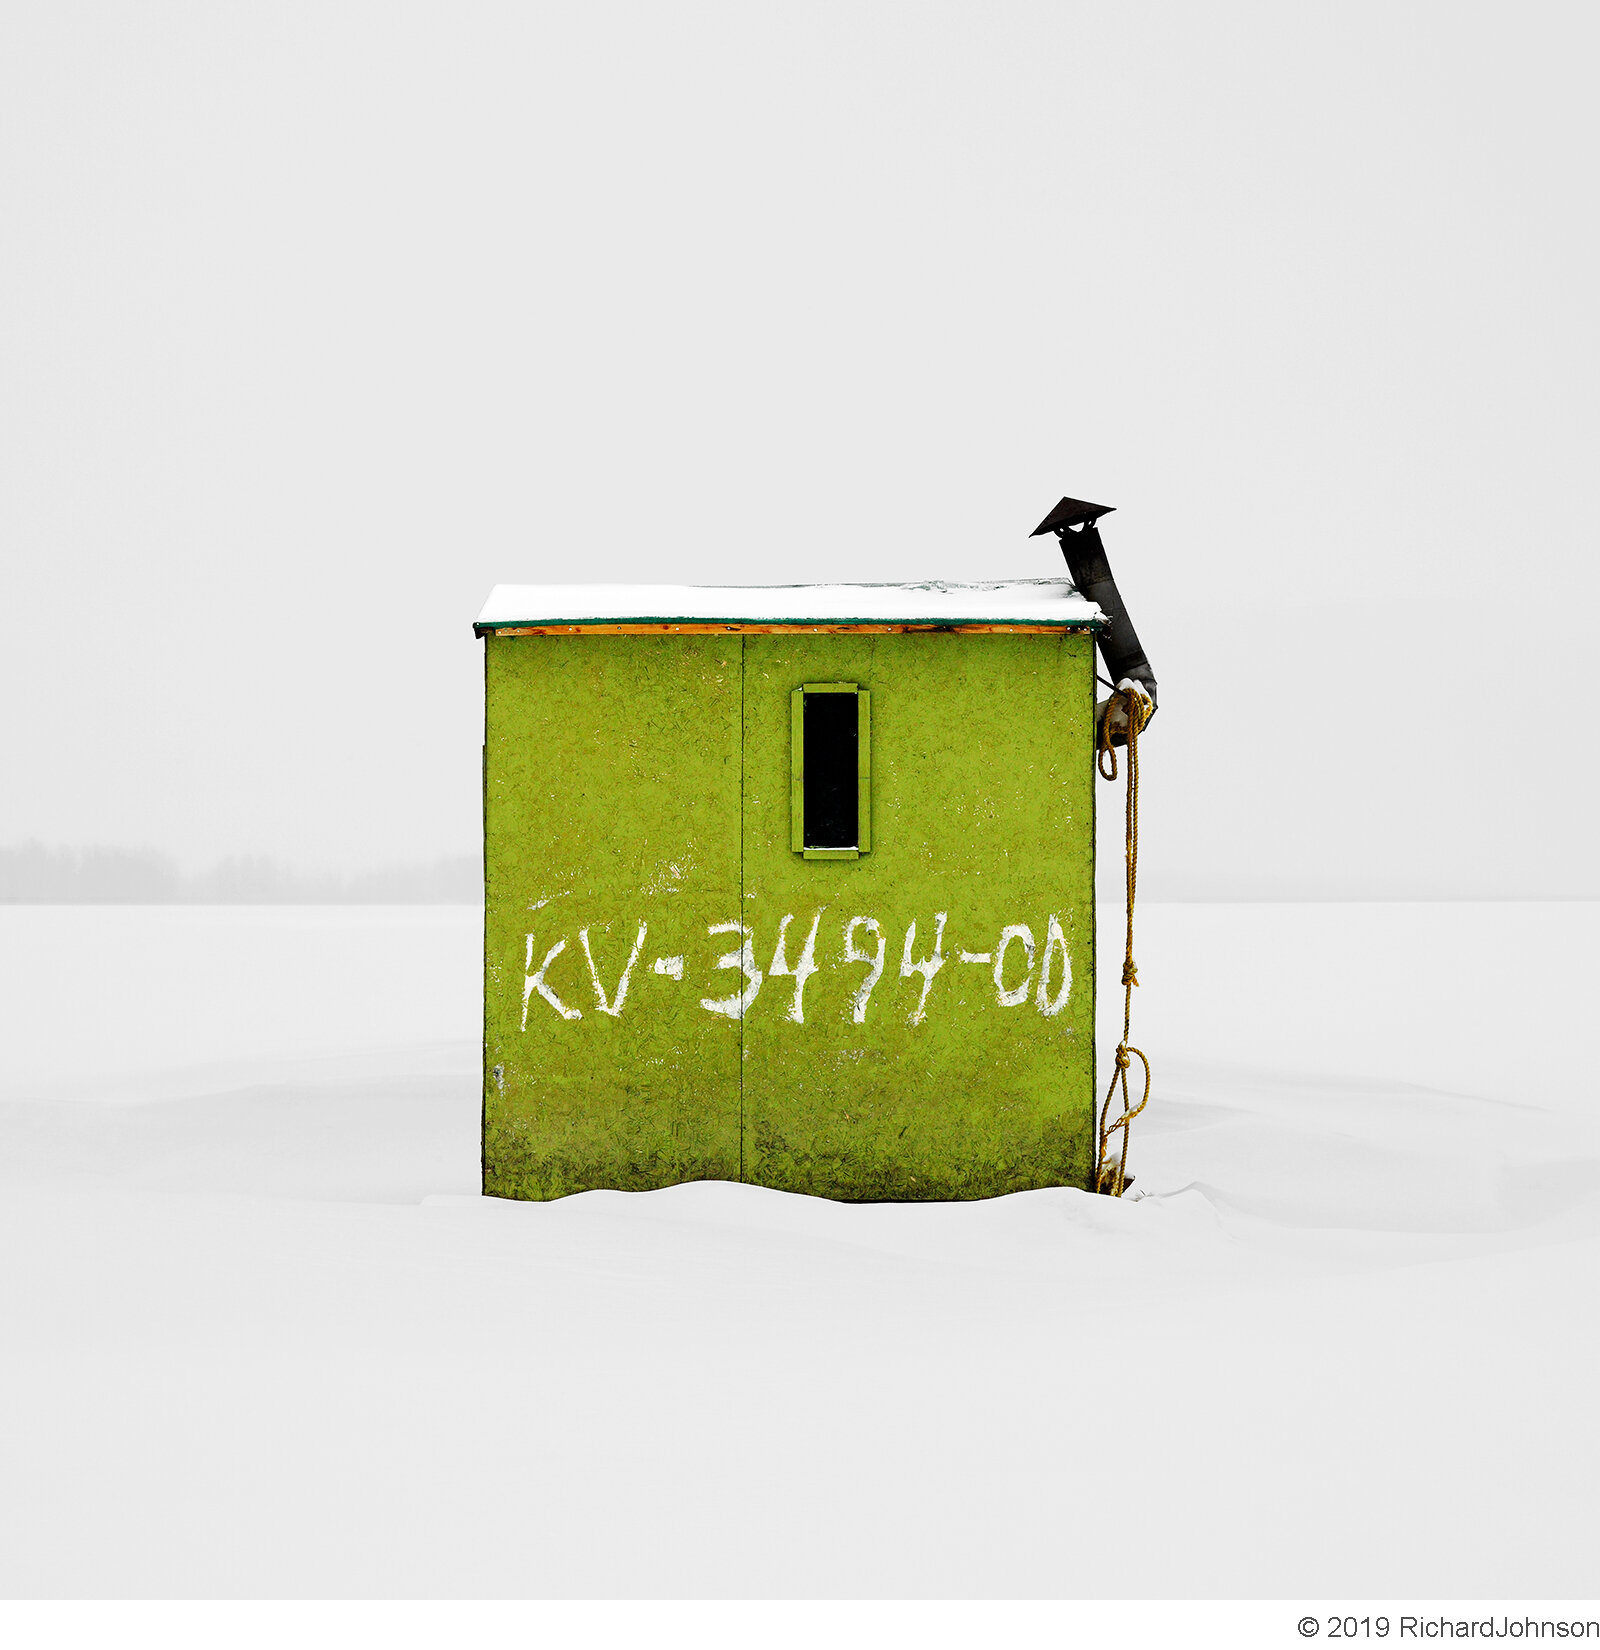 Ice Hut # 155 - Petrie Island, Orléans, Ontario, Canada, 2008